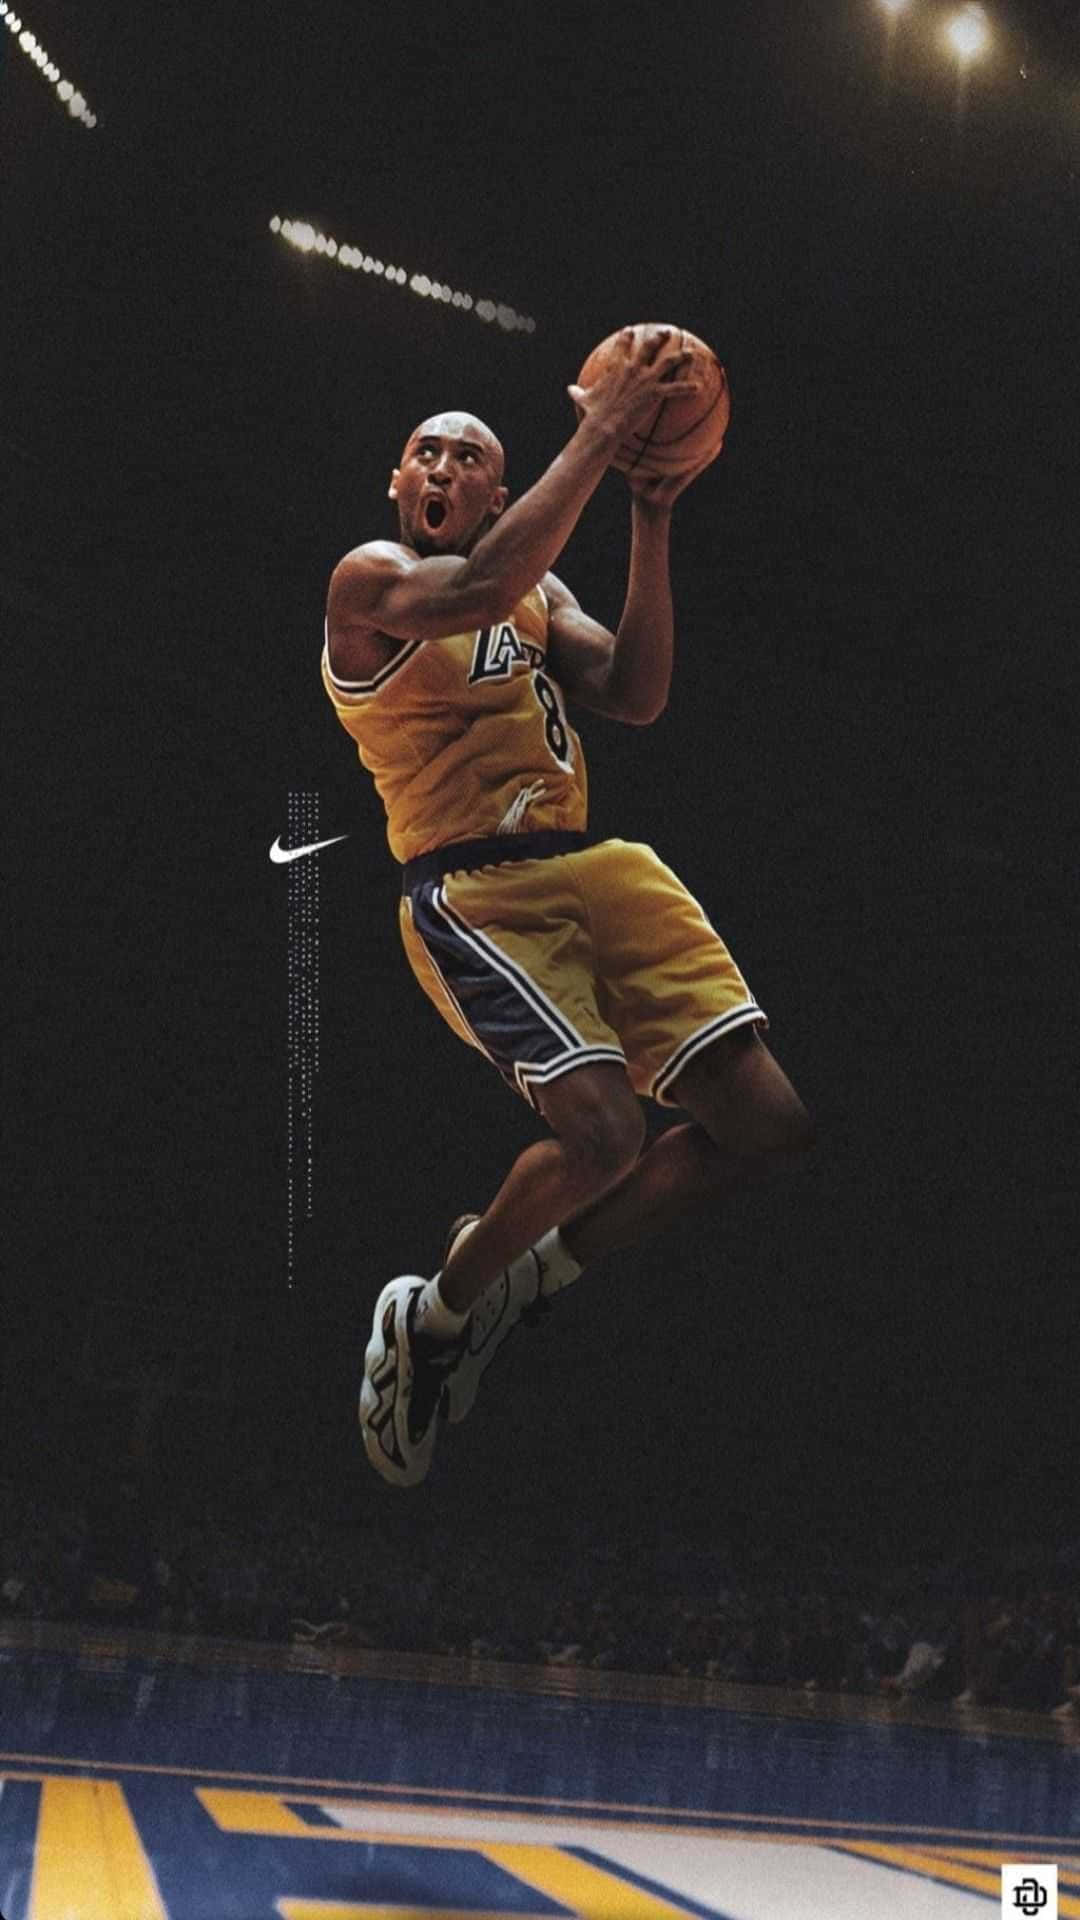 Imagendel Legendario Jugador De Baloncesto De Los Angeles Lakers, Kobe Bryant, Jugando Al Baloncesto. Fondo de pantalla